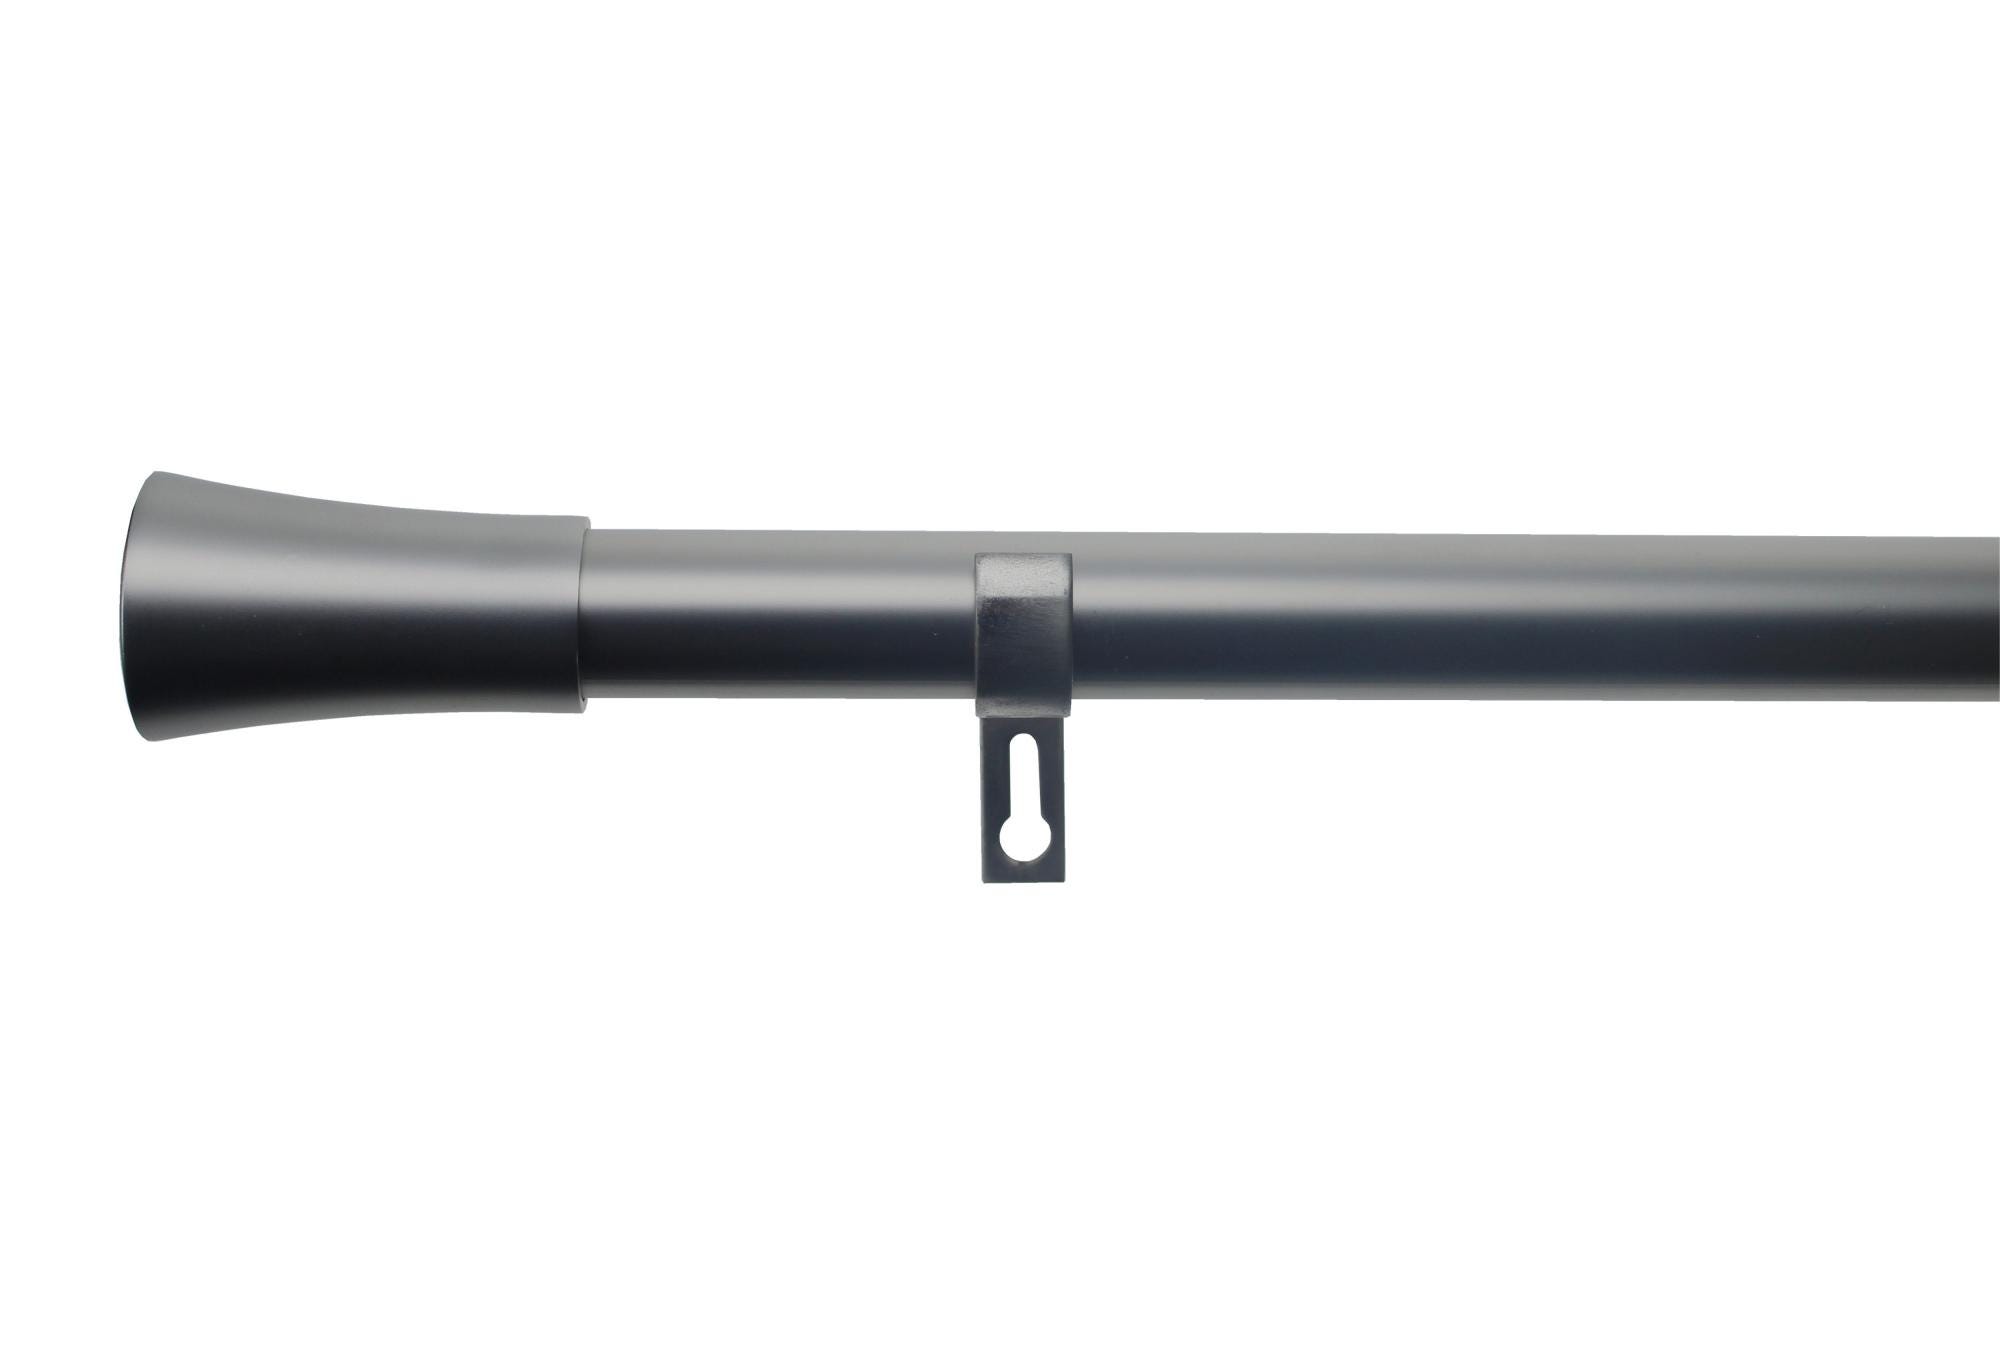 Kit bastone per tenda a pressione estensibile da 200 a 300 cm Sombrio in  ferro sabbiato grigio / argento Ø 19 mm INSPIRE